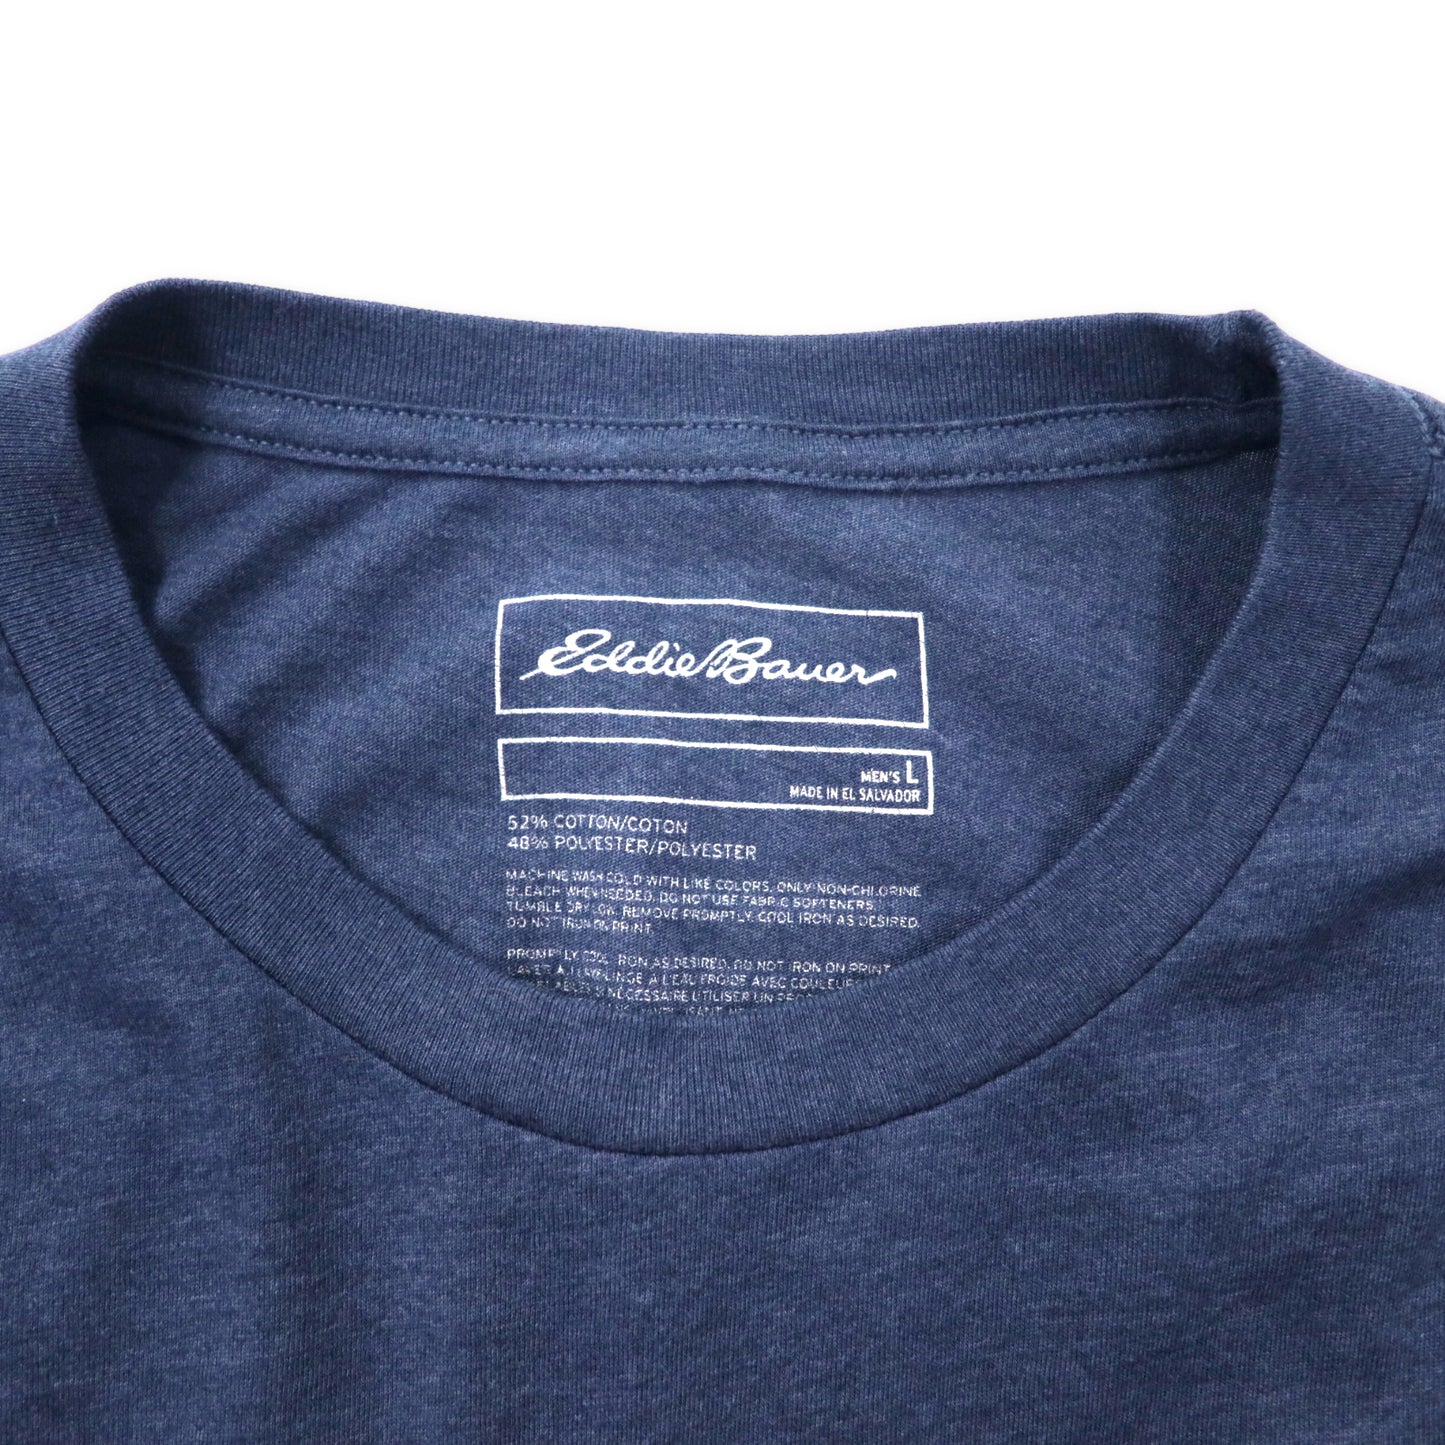 Eddie Bauer ロゴプリントTシャツ L ネイビー コットン BUIT TO LAST ビッグサイズ